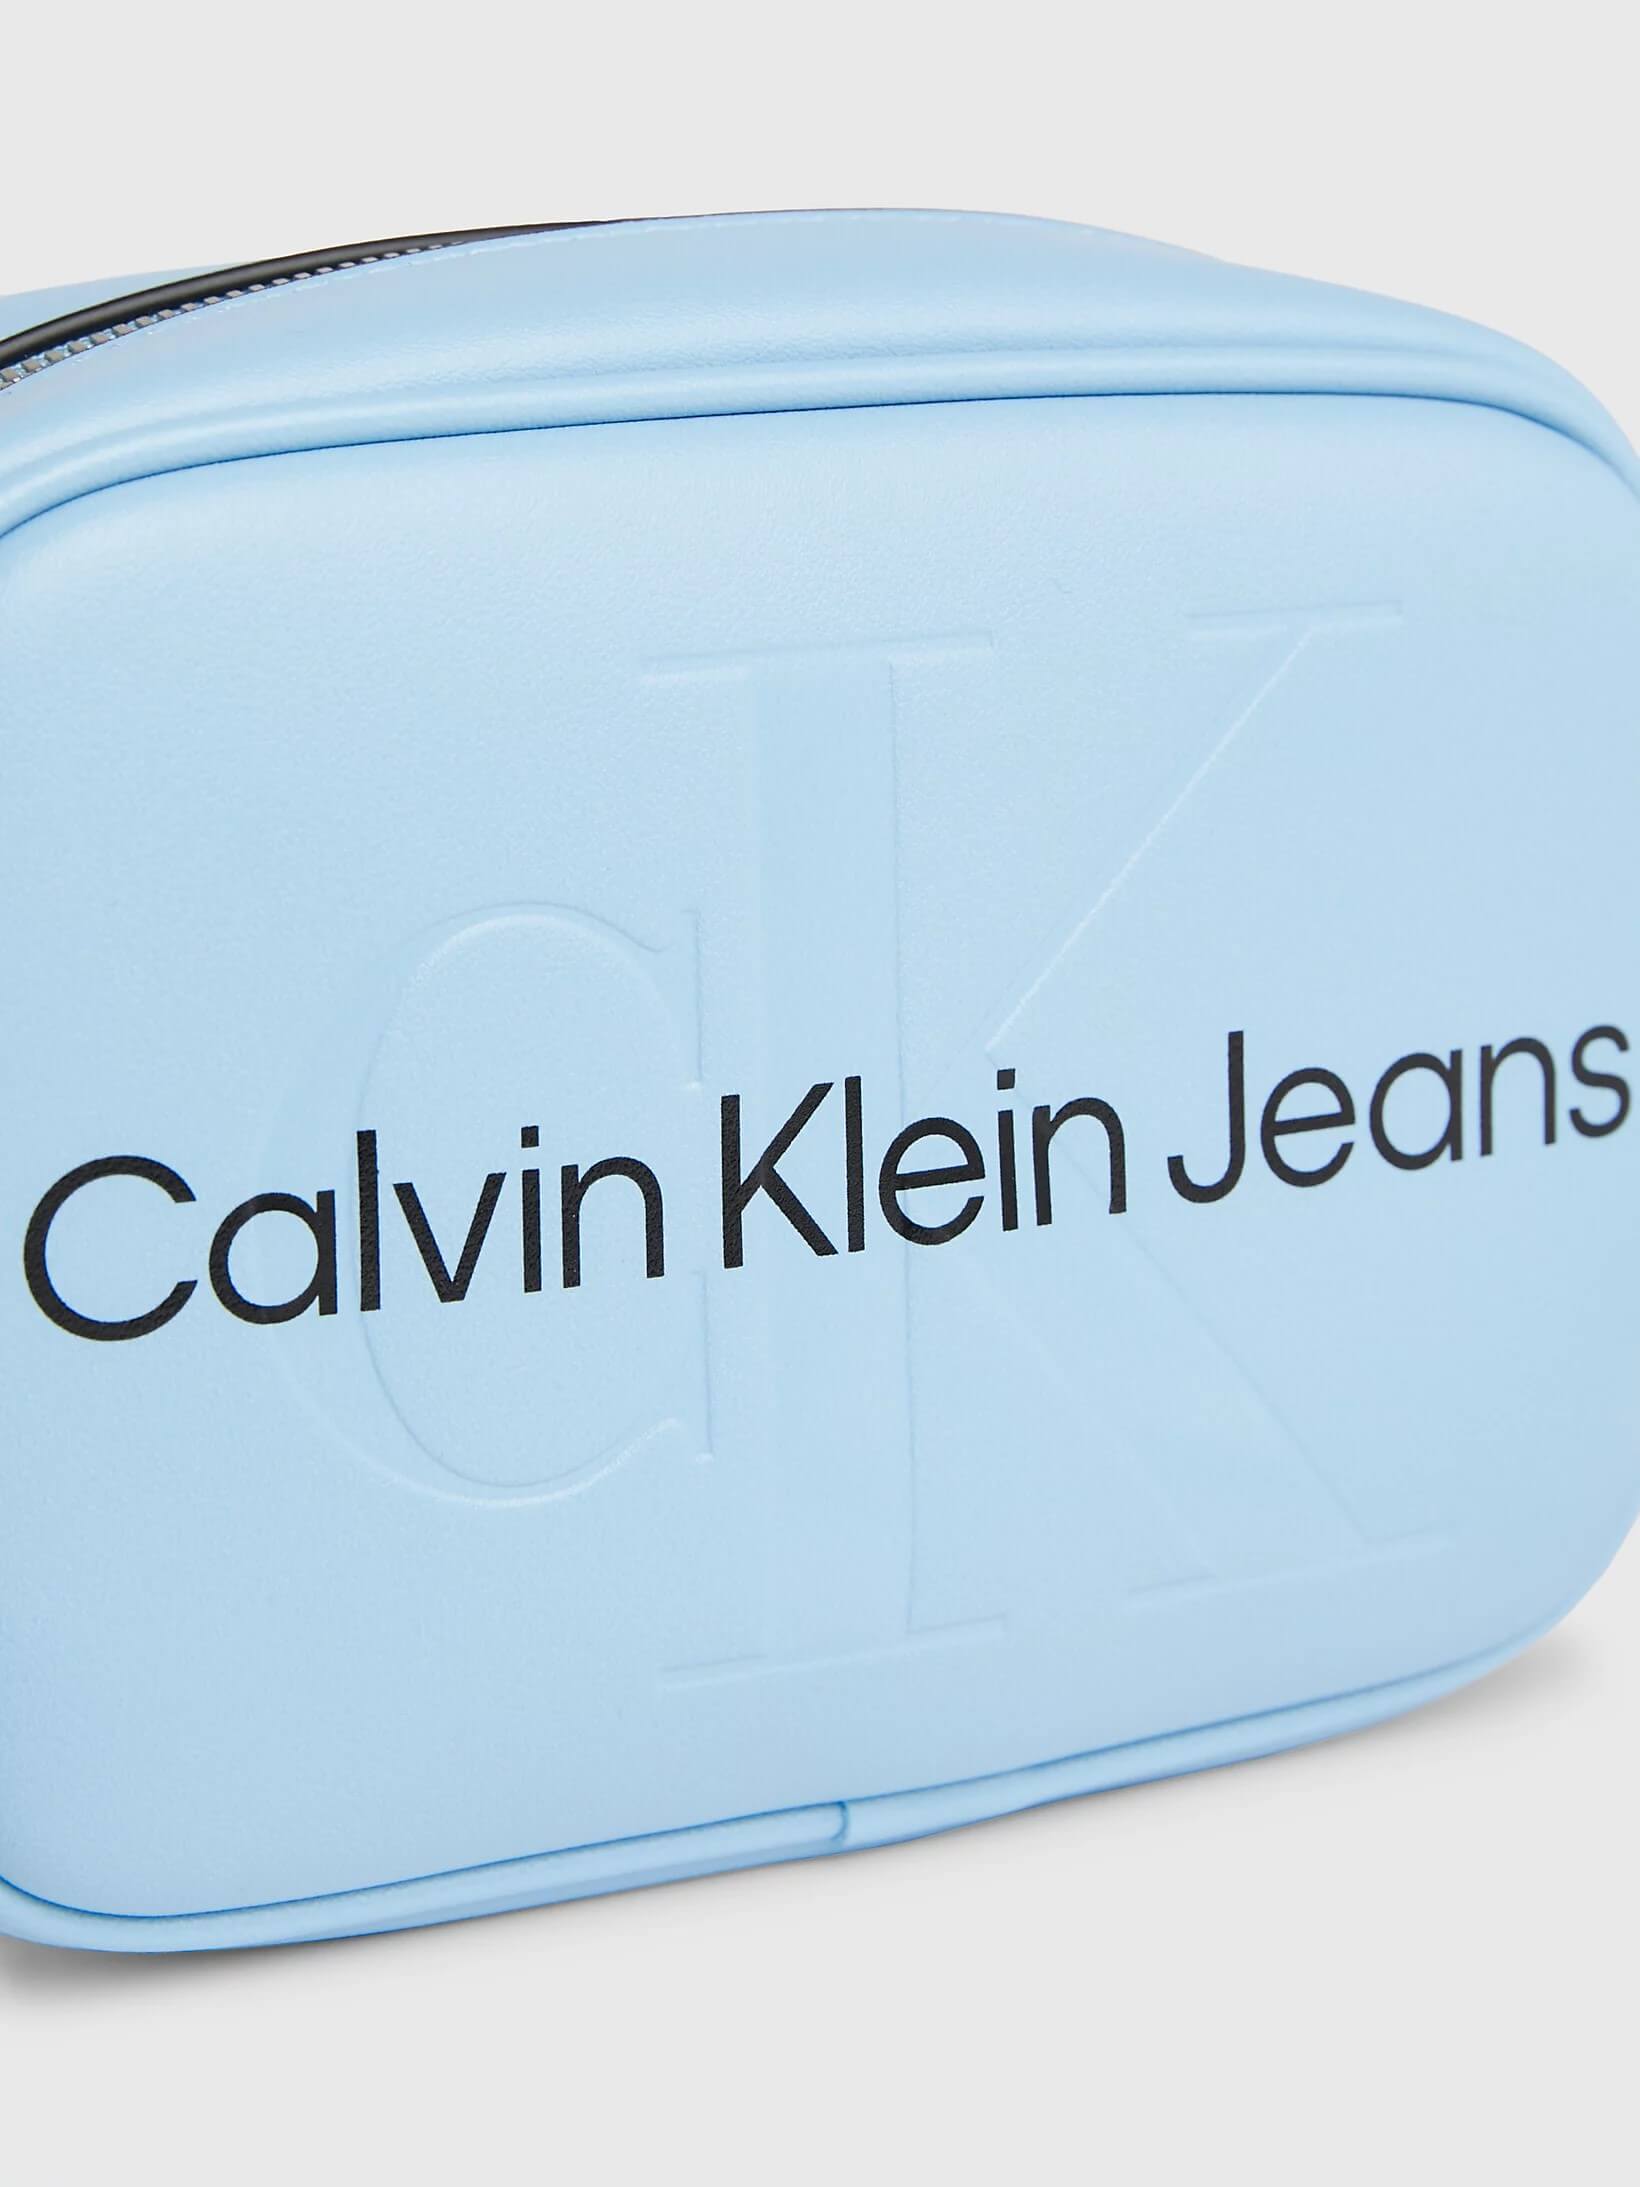 Bolsa Calvin Klein Crossbody Monologo Mujer Azul - Talla: Única